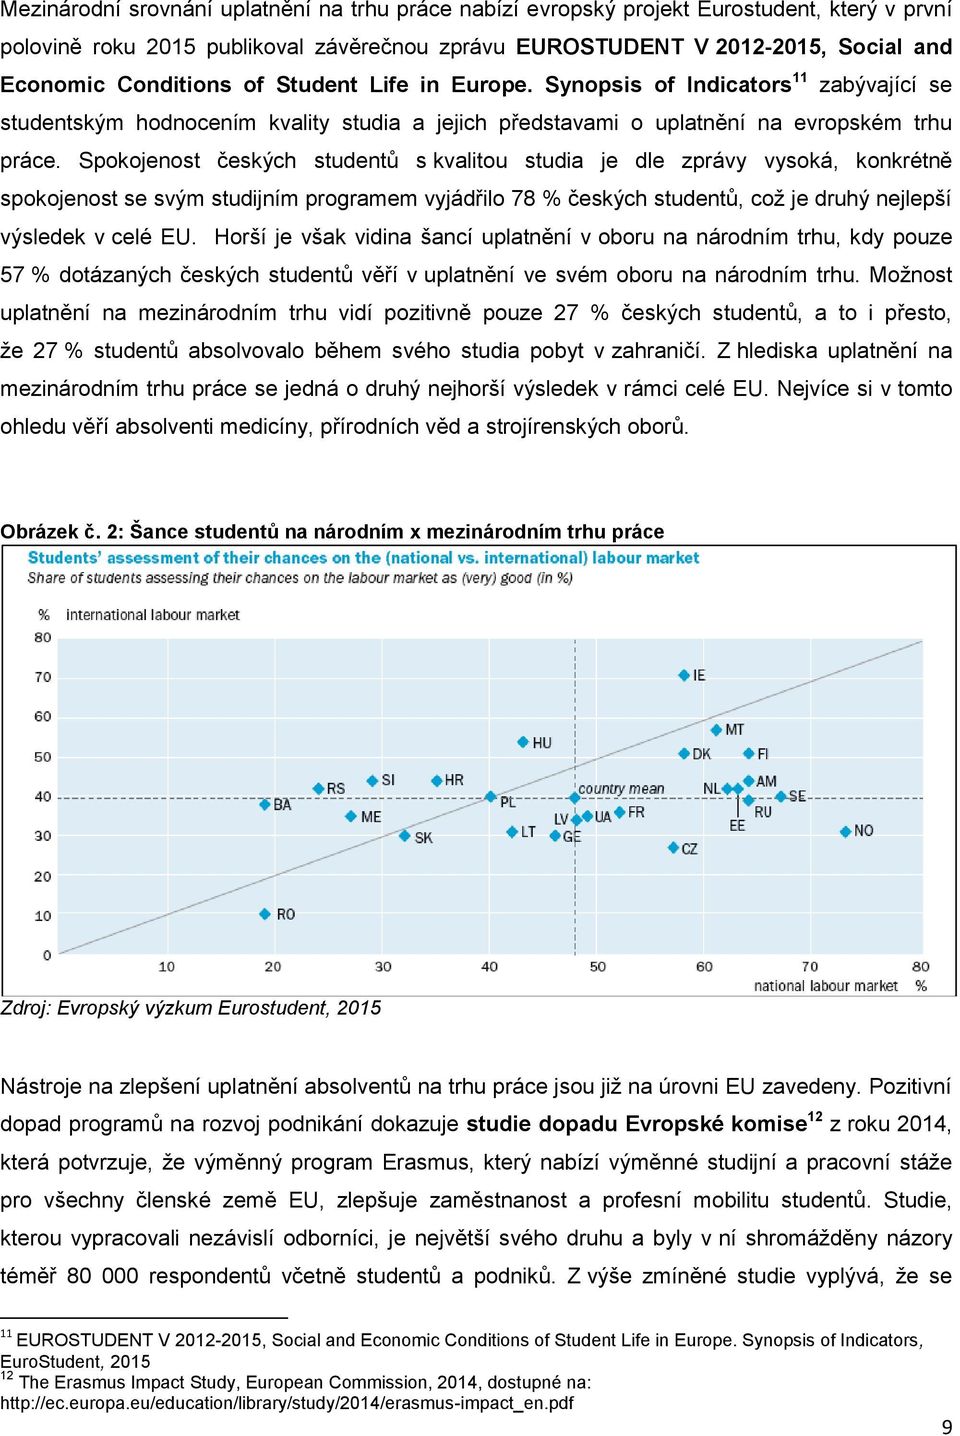 Spokojenost českých studentů s kvalitou studia je dle zprávy vysoká, konkrétně spokojenost se svým studijním programem vyjádřilo 78 % českých studentů, což je druhý nejlepší výsledek v celé EU.